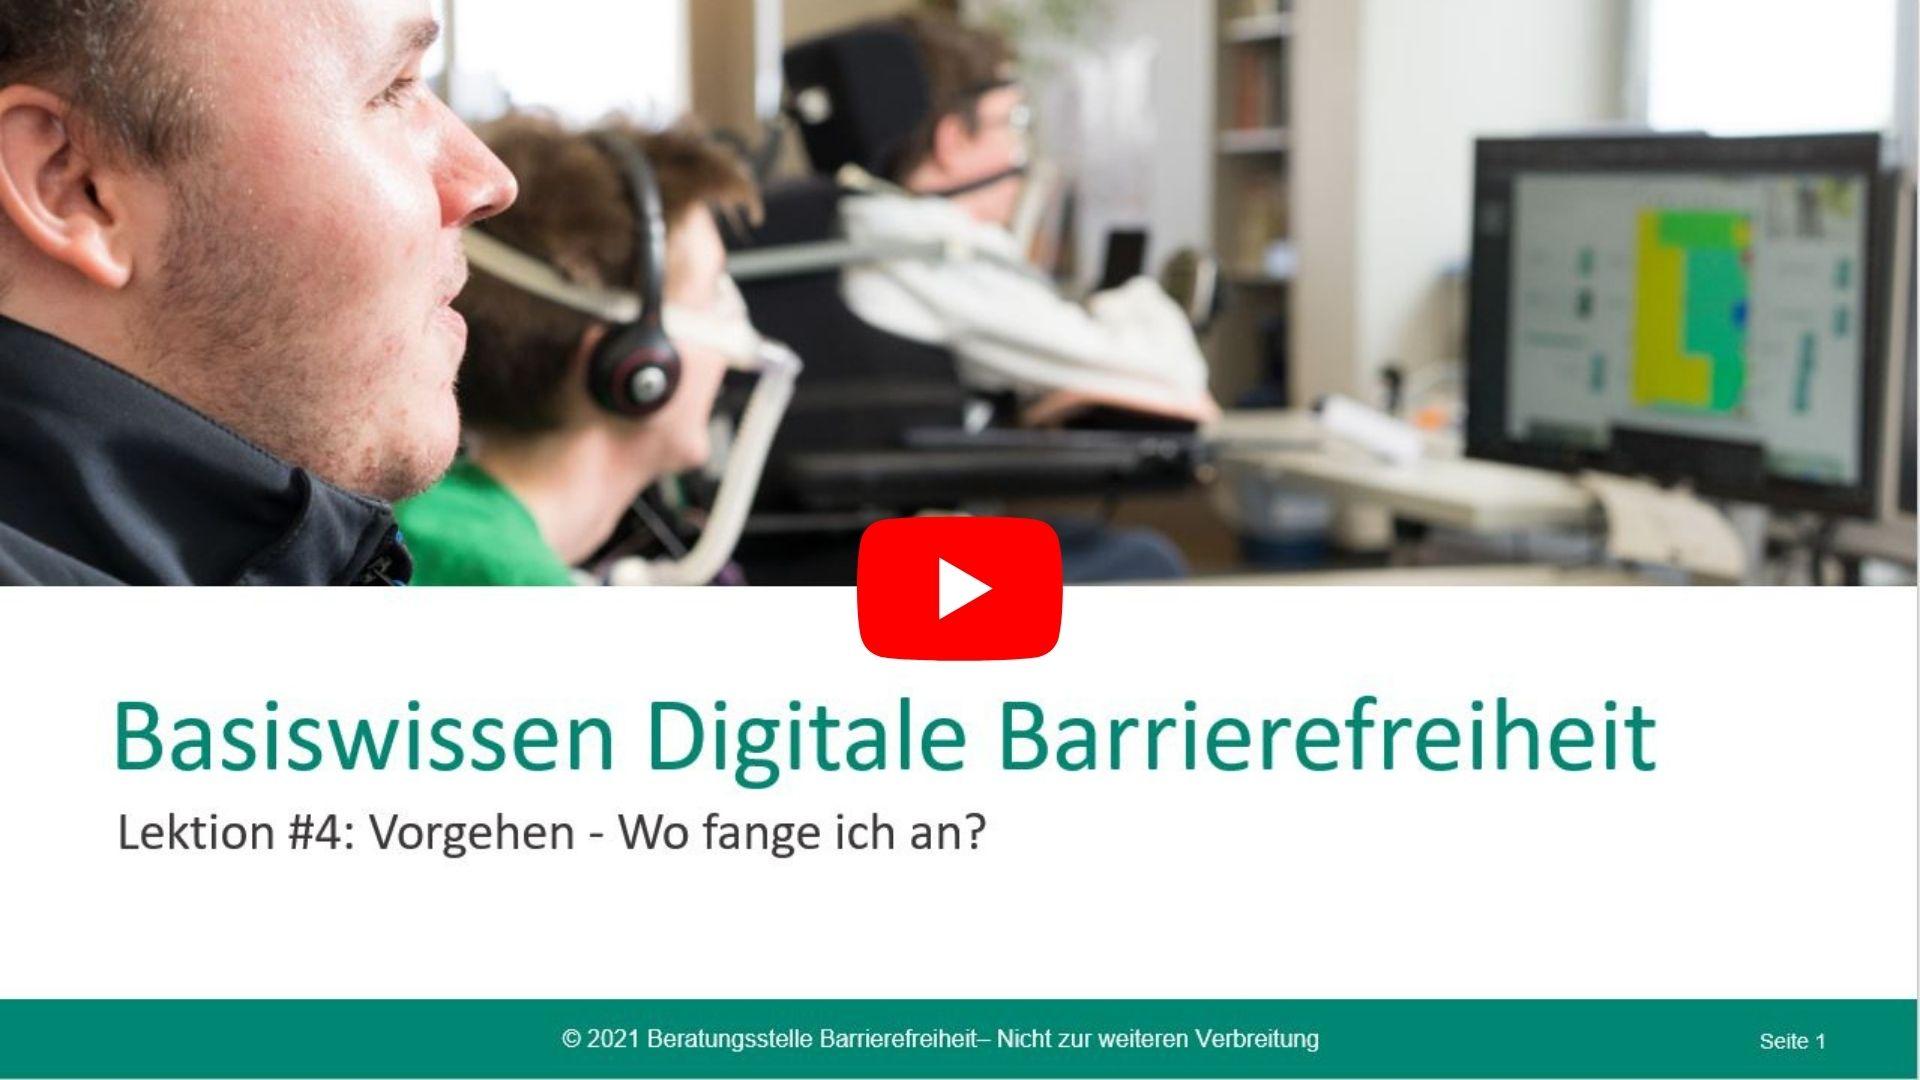 Link zum Video: Basiswissen digitale Barrierefreiheit - Vorgehen: wo fange ich an?